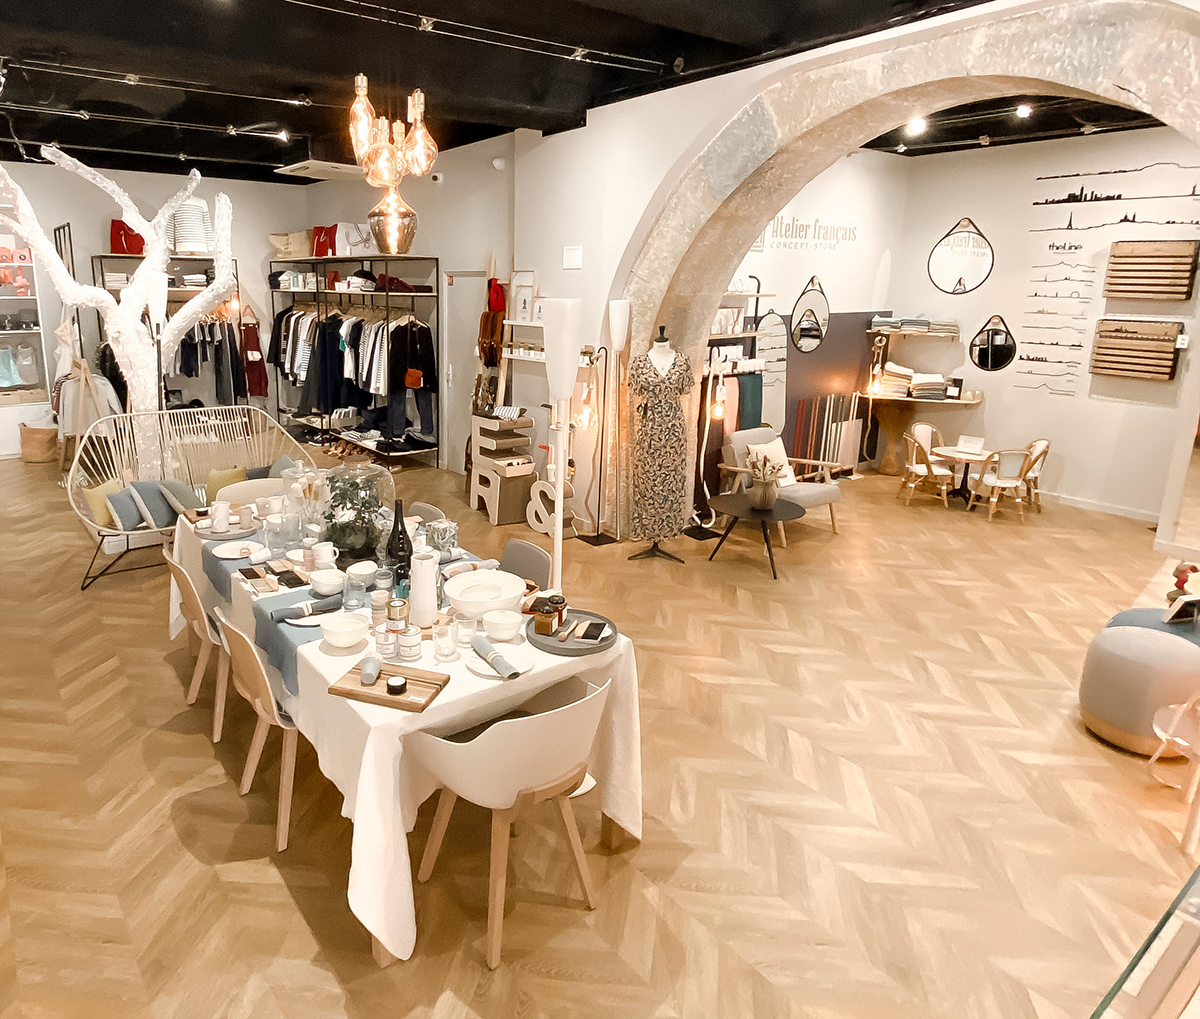 L'Atelier Français, French Riviera Concept Store